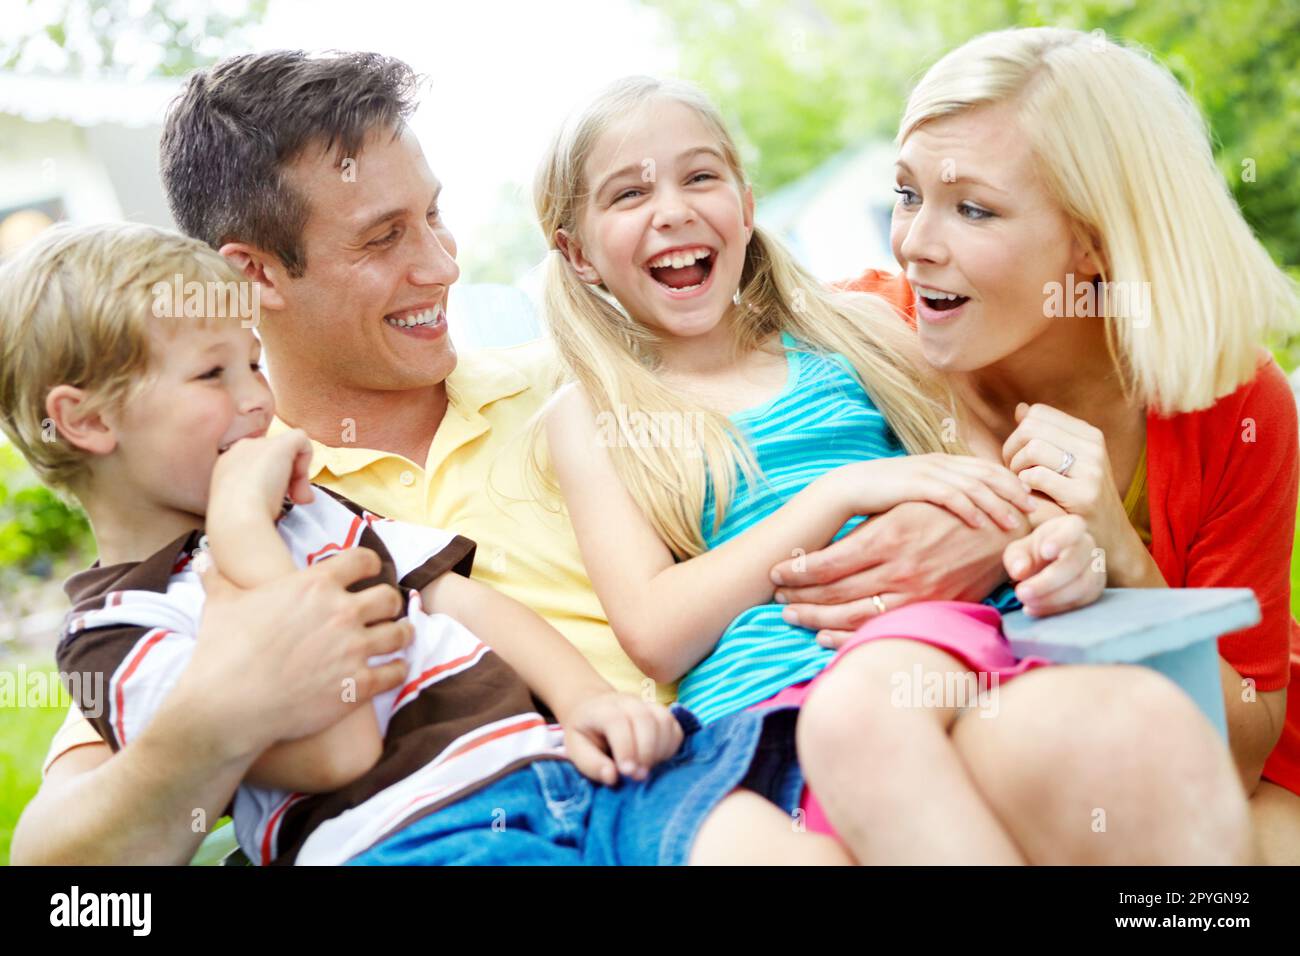 Sie sind sicher in der Liebe ihrer Eltern. Glückliche junge Familie, die Zeit zusammen im Freien verbringt. Stockfoto